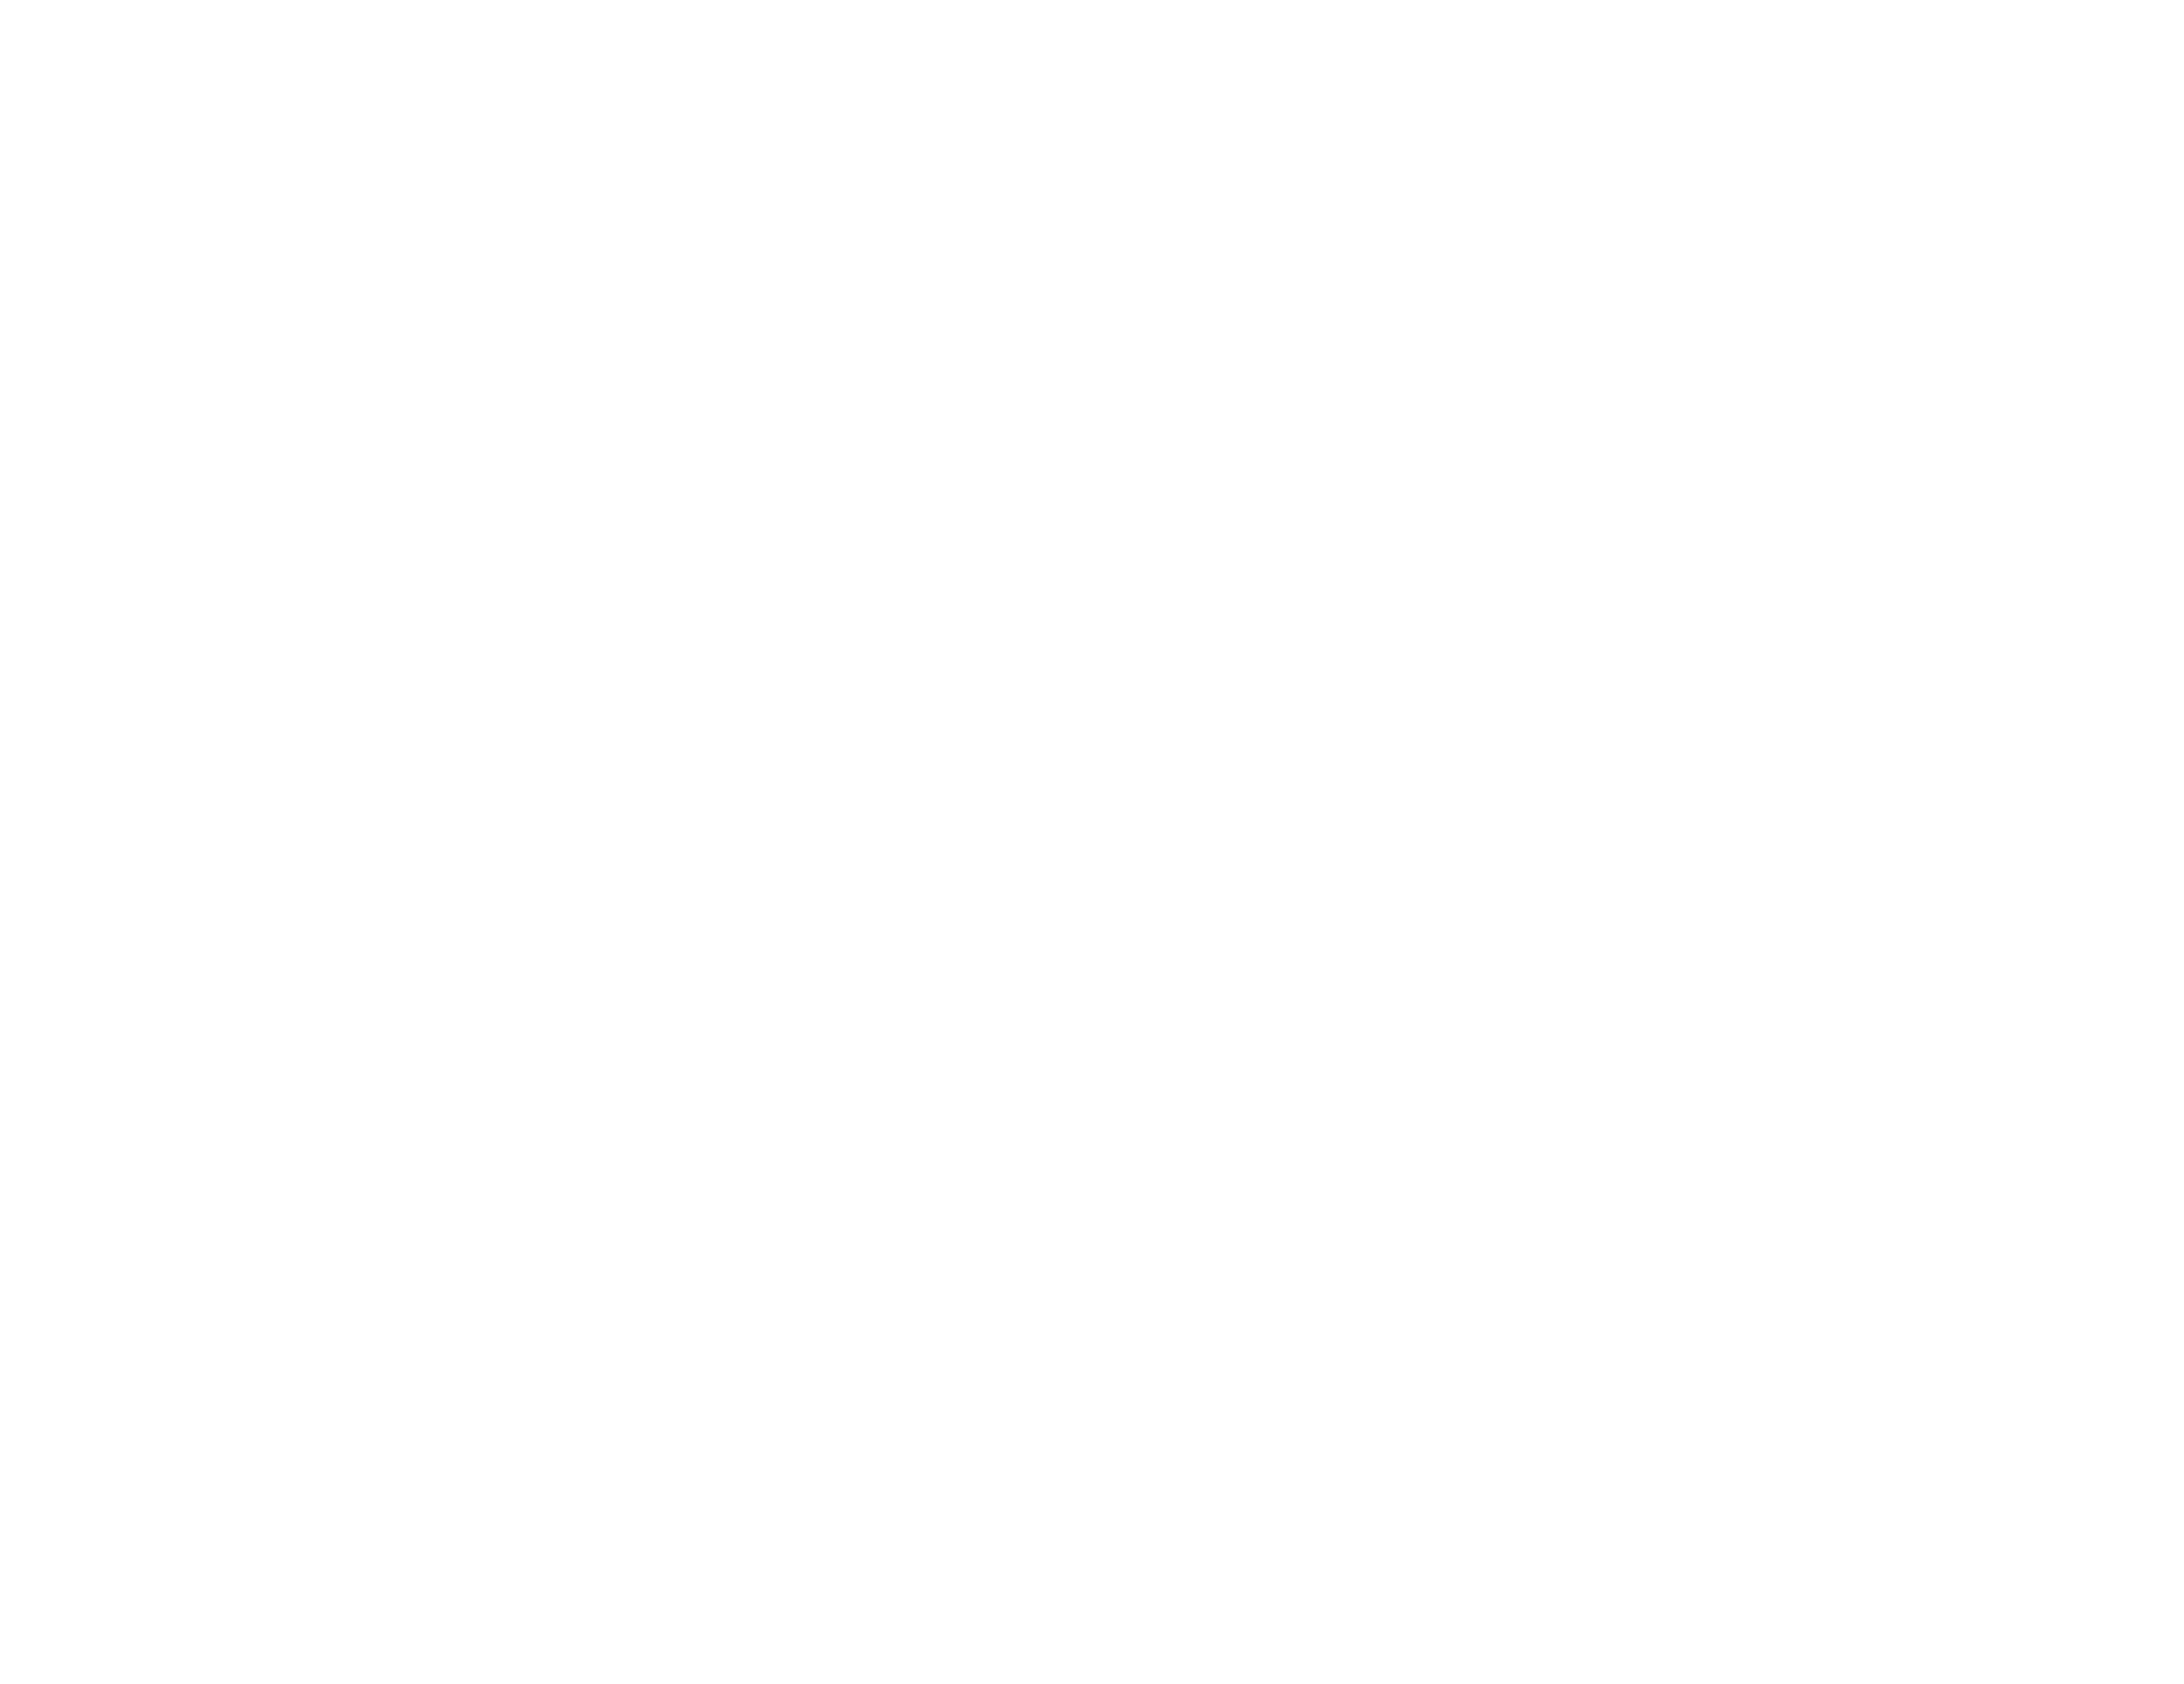 Safe & Secure: World Forum The Hague eerste congreslocatie ter wereld met Trulifi by Signify